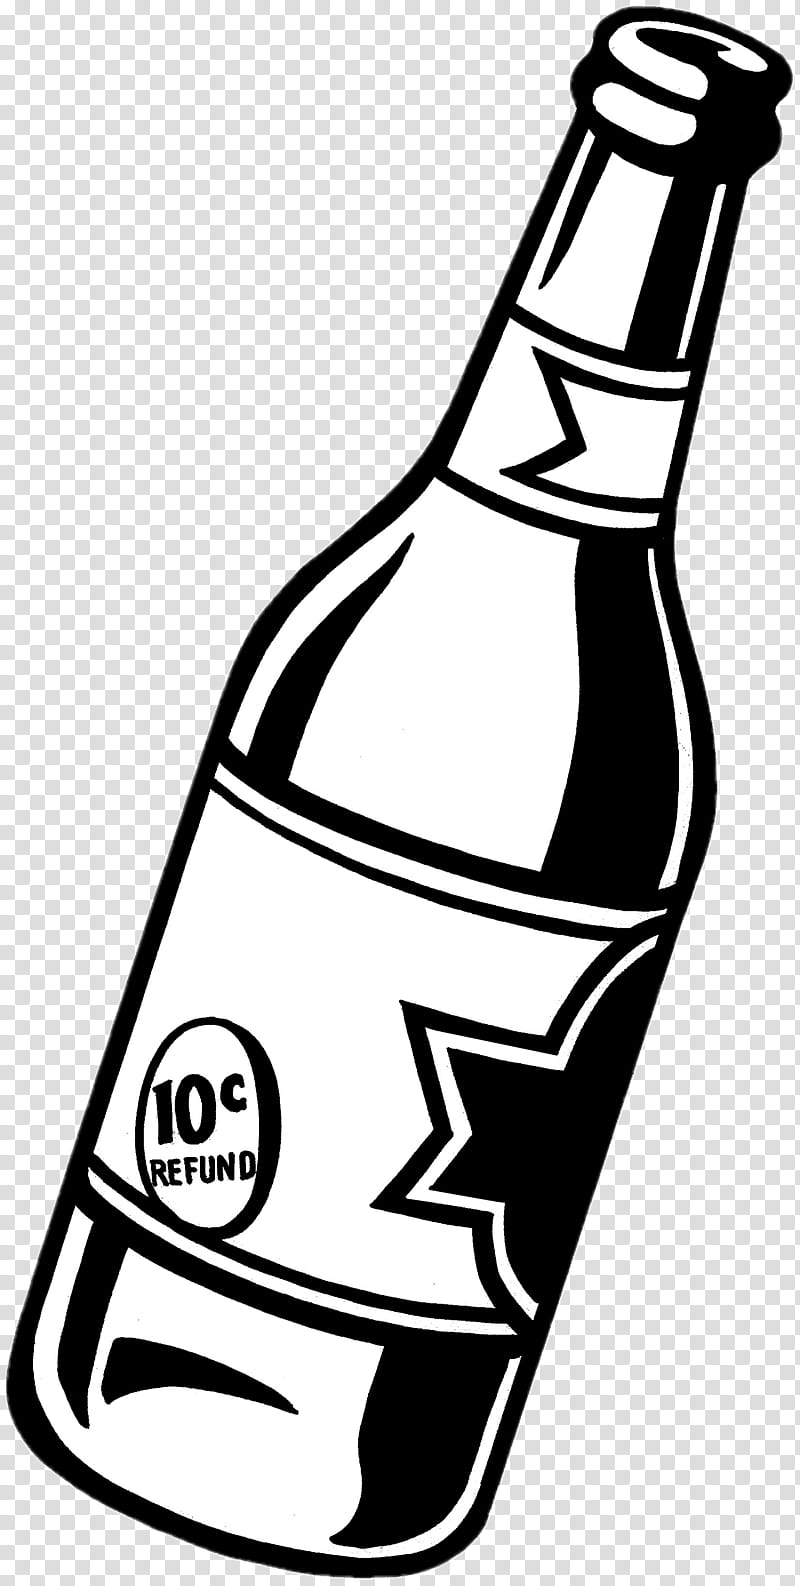 Beer, Beer Bottle, Fizzy Drinks, Drawing, Bar, Hops, Glass Bottle, Alcoholic Beverages transparent background PNG clipart